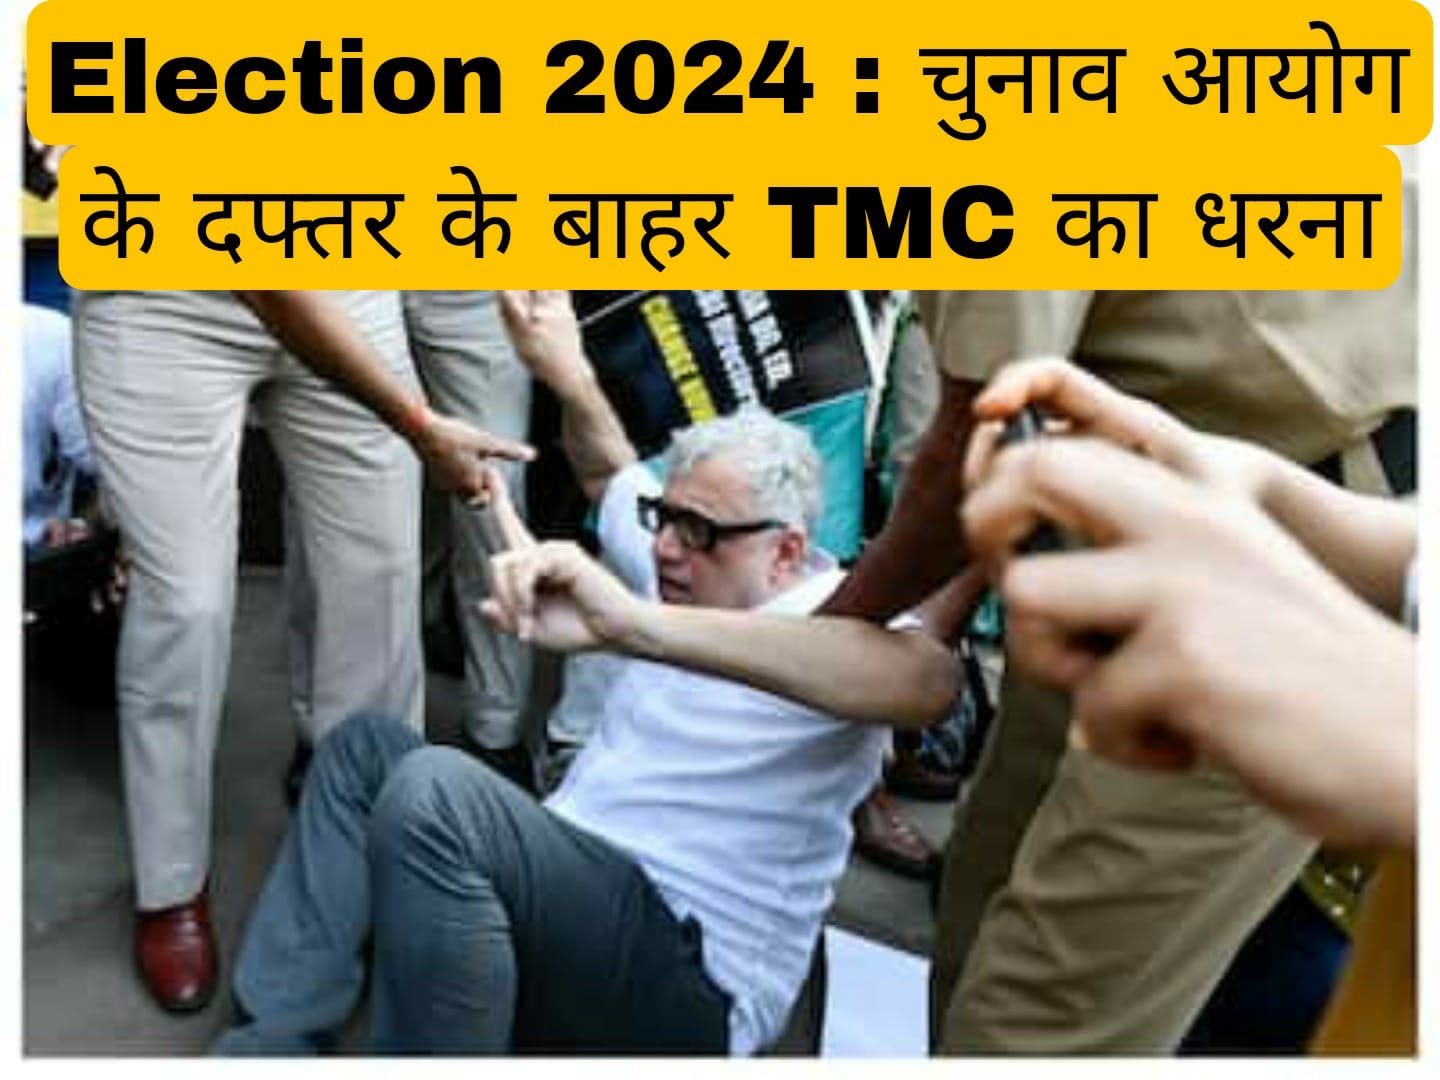 Election 2024 : चुनाव आयोग के दफ्तर के बाहर तृणमूल कांग्रेस का धरना, पुलिस ने हिरासत में लिया